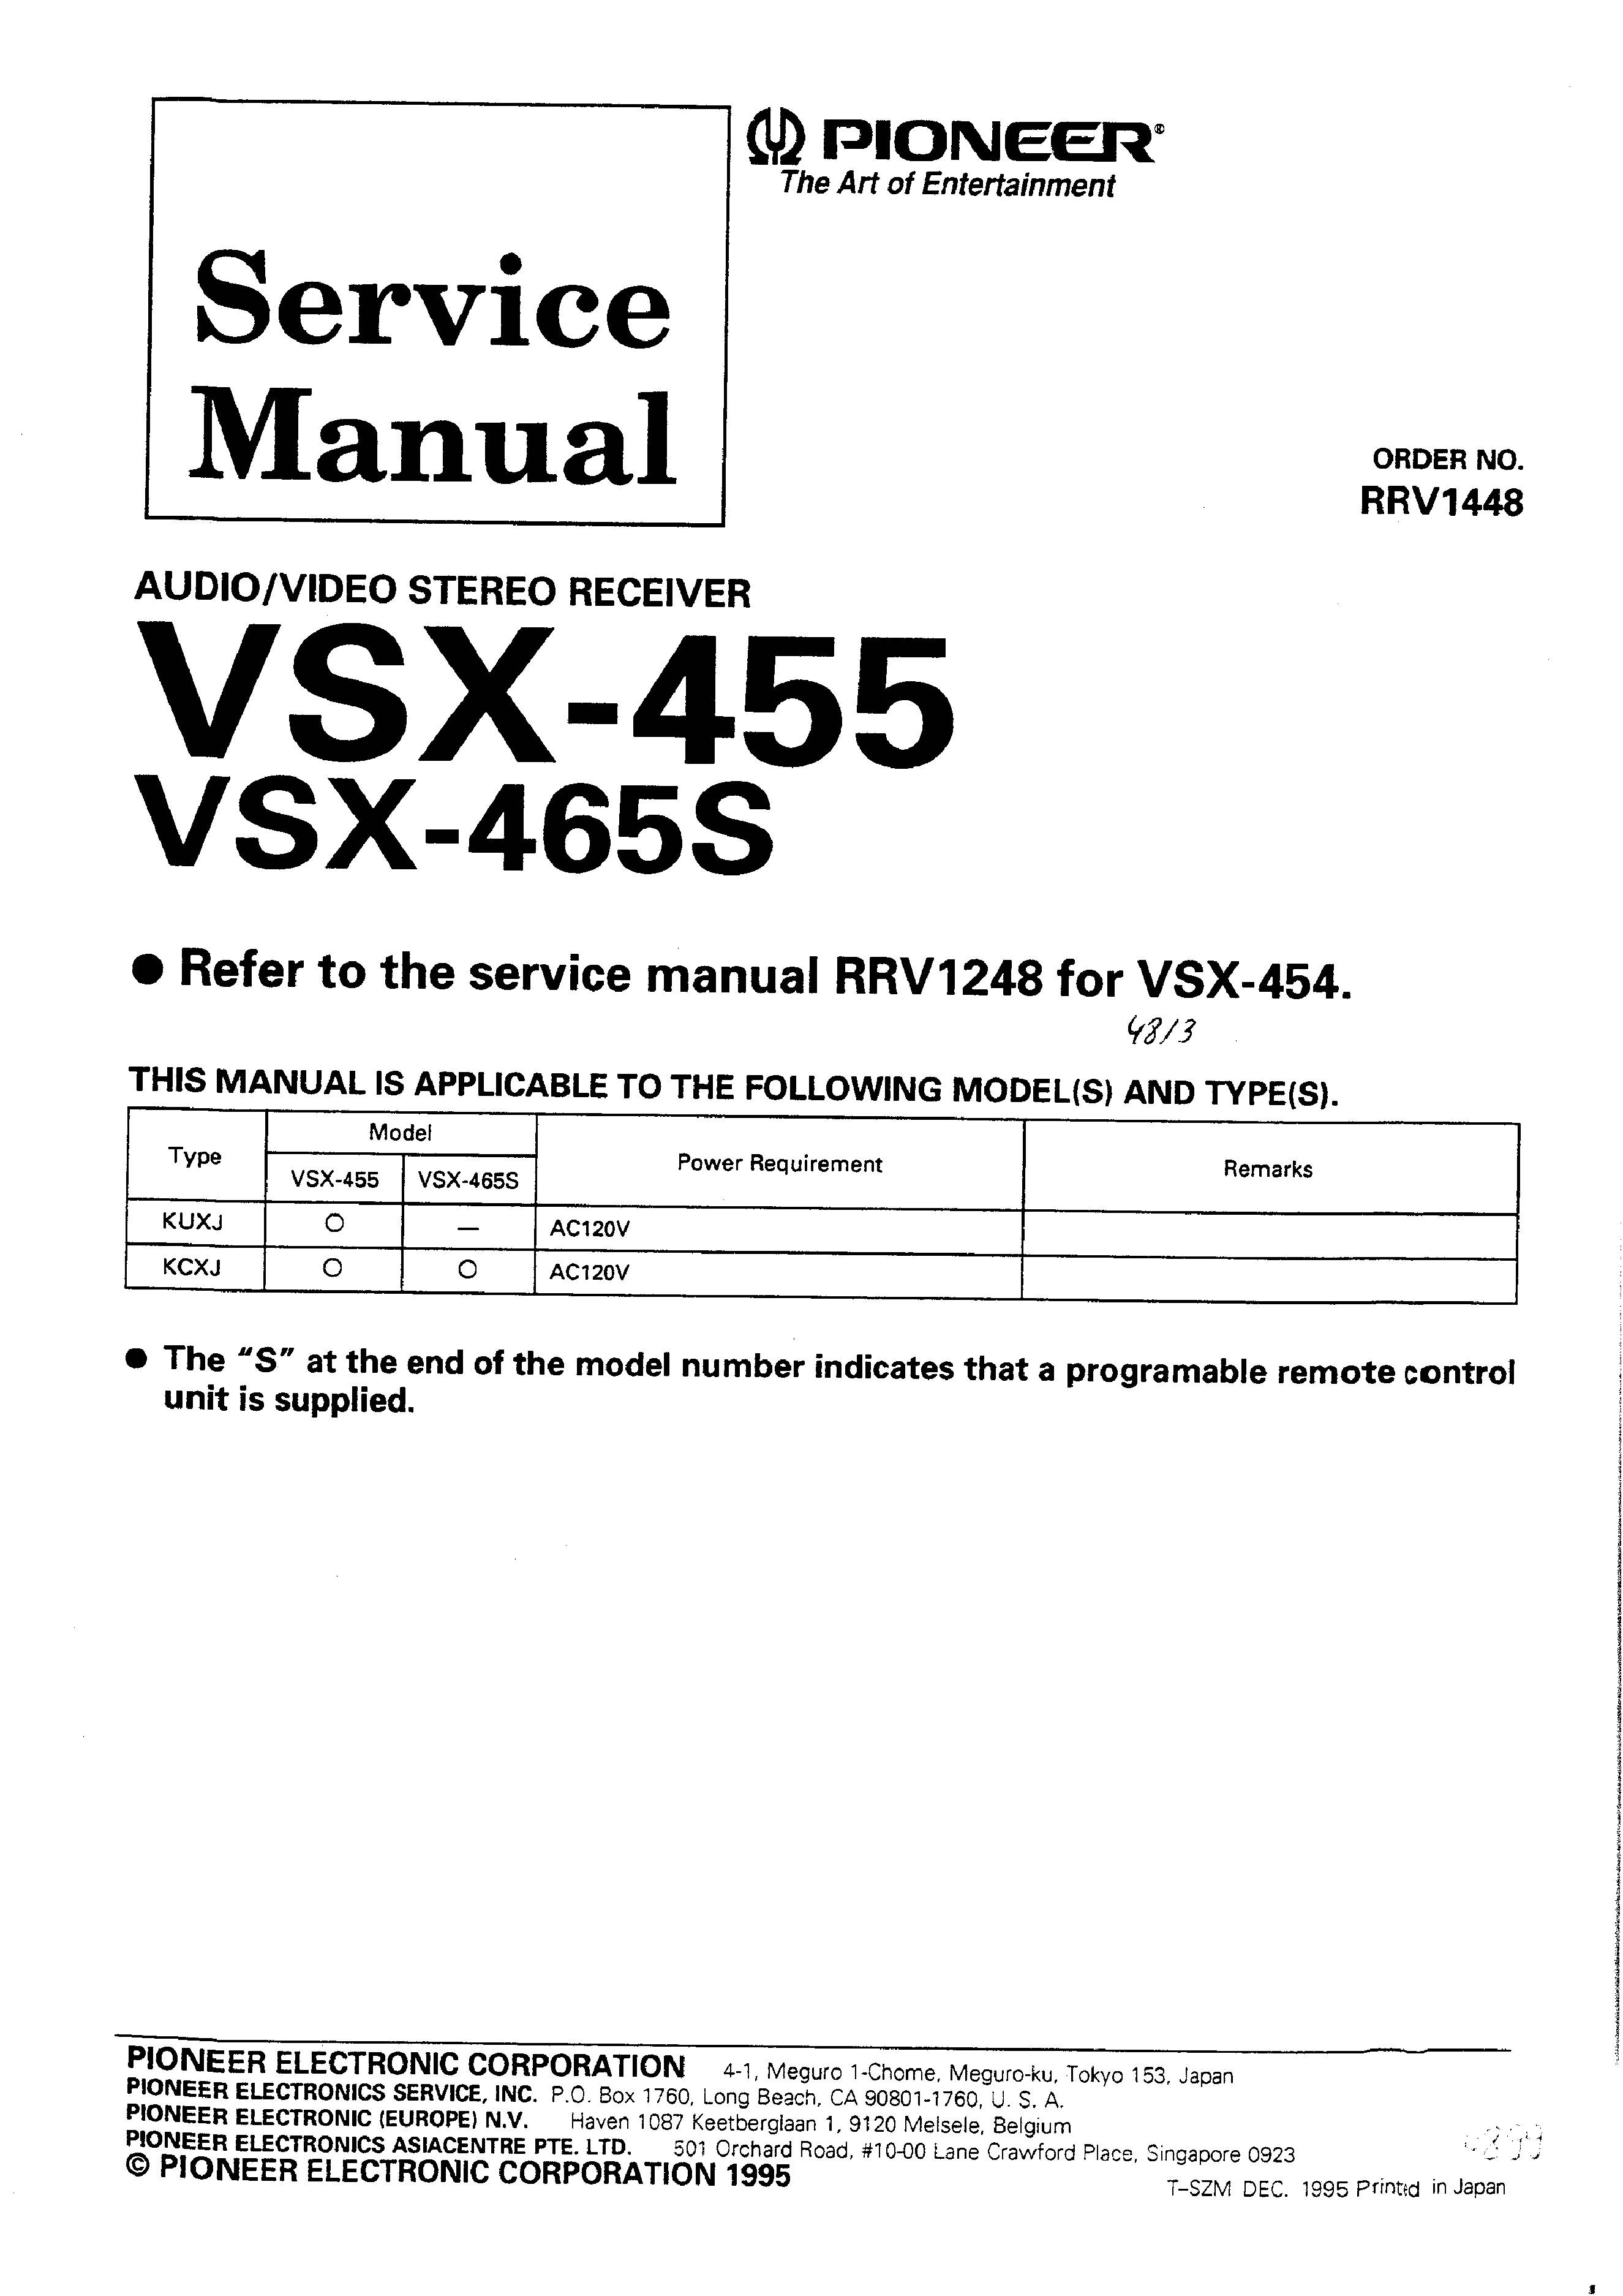 Pioneer VSX-465S datos técnicos & especificación